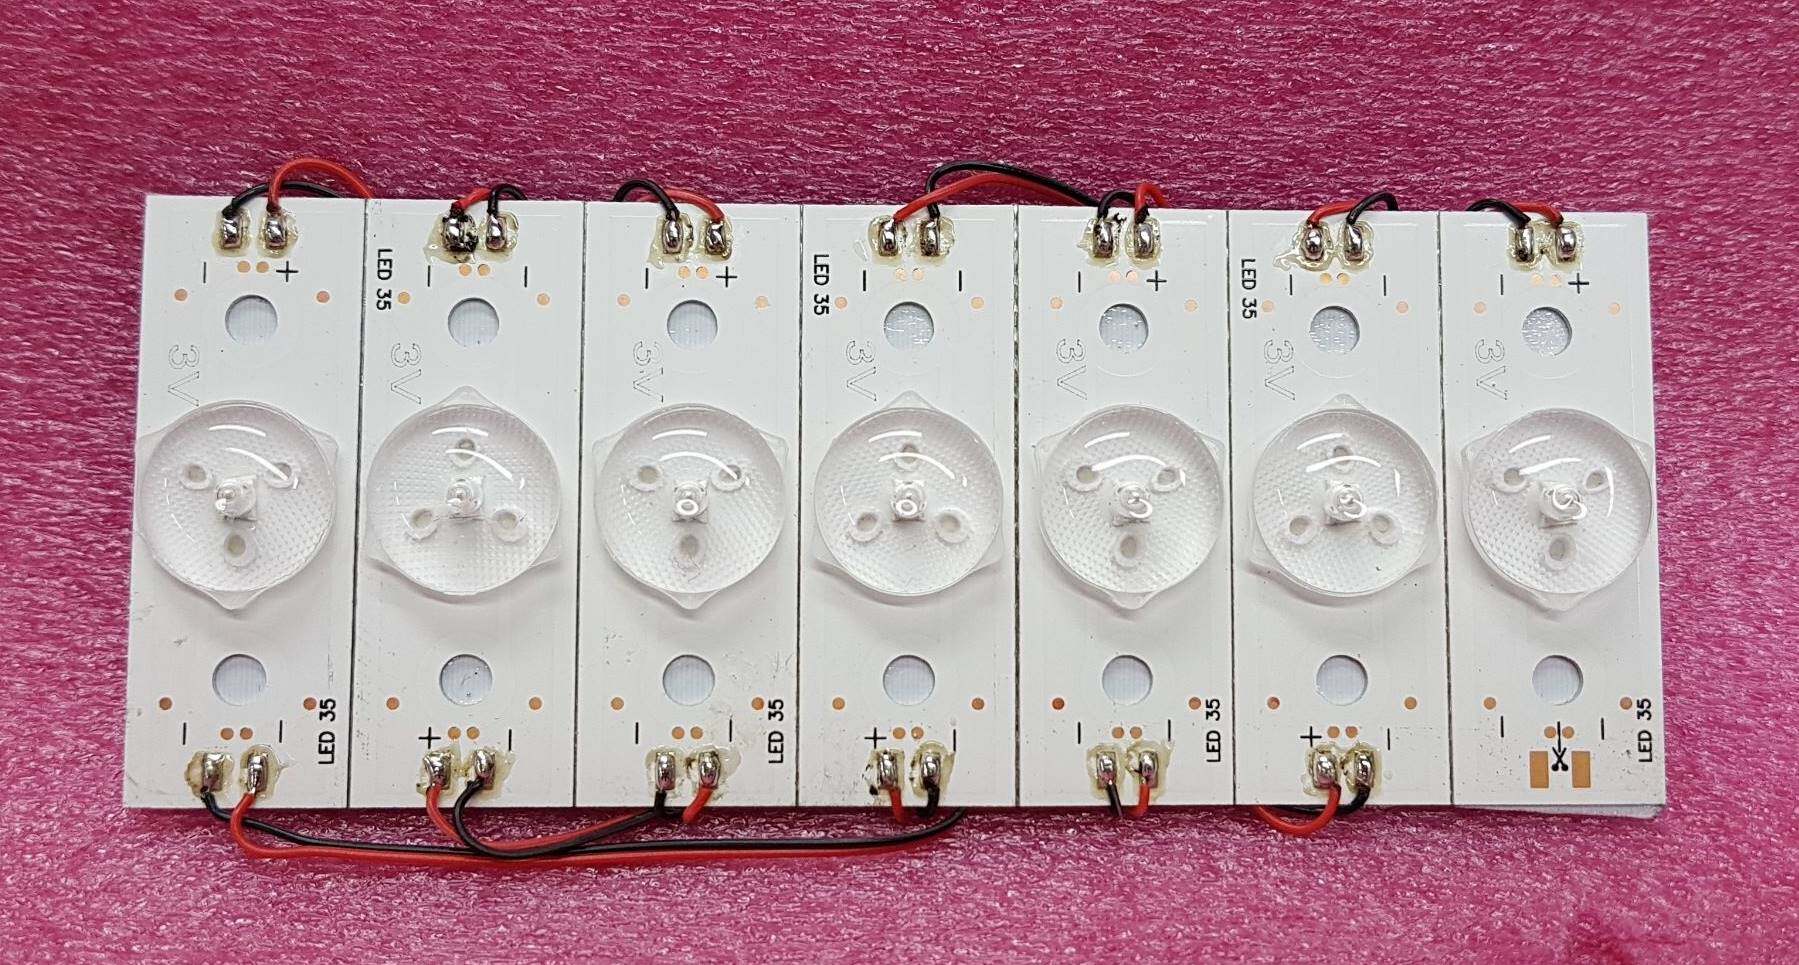 5 ชุด มี 35 ดวง หลอดไฟ LED BACKLIGHT DIY 3V 1W แบบกลม (หลอดแบล็คไลท์) ใช้ ตัดแปะ ดัดแปลง ใส่ได้หลายยี่ห้อ เช่น TCL ,ACONATIC, PHILIPS สินค้าใหม่